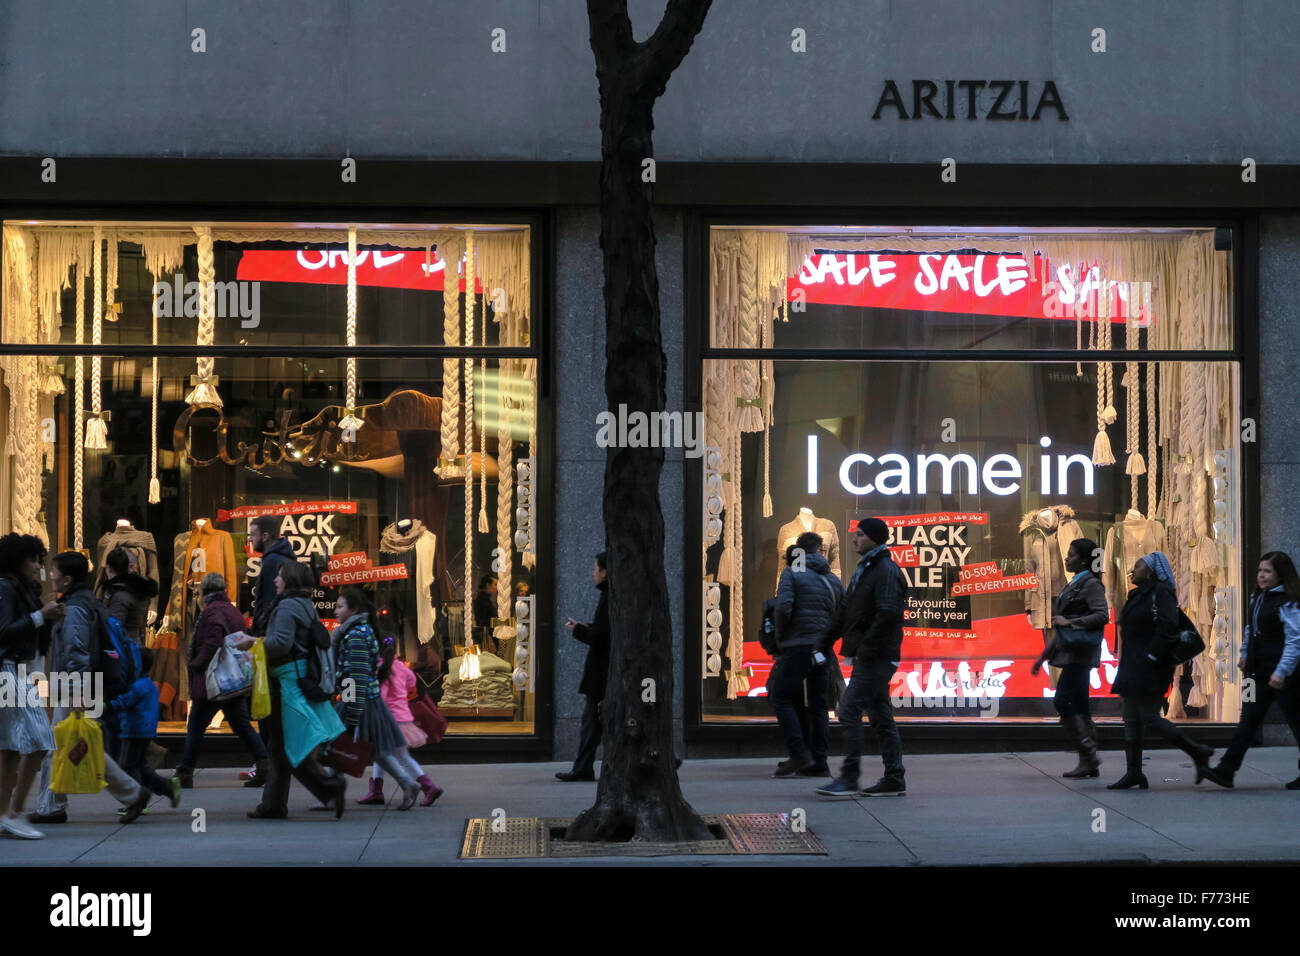 Aritzia Schaufenster Werbung Black Friday Sales, NYC Stockfoto